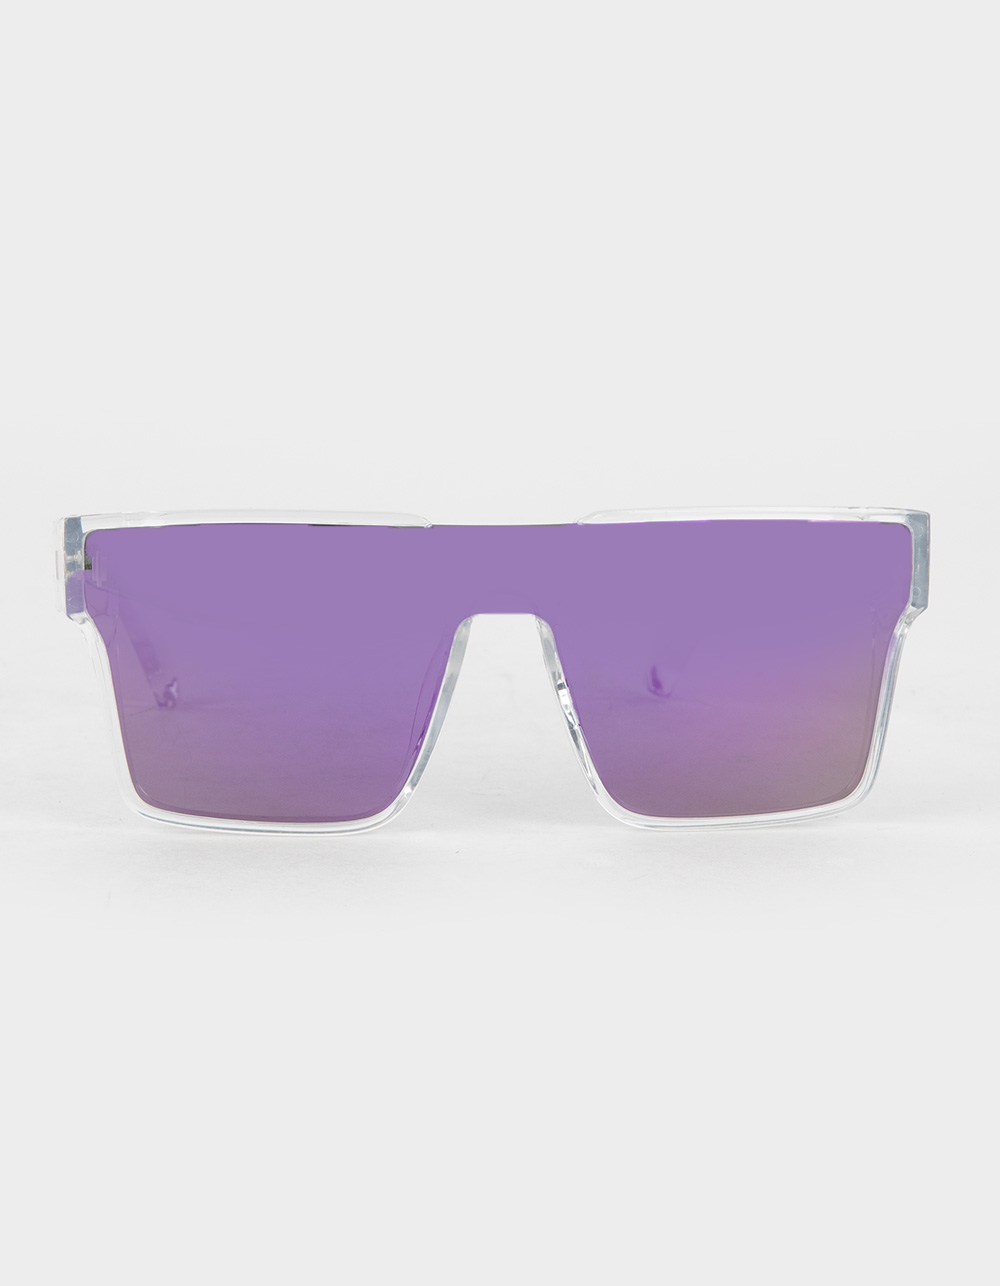 KREEDOM Headliner Sunglasses - PURPLE COMBO | Tillys